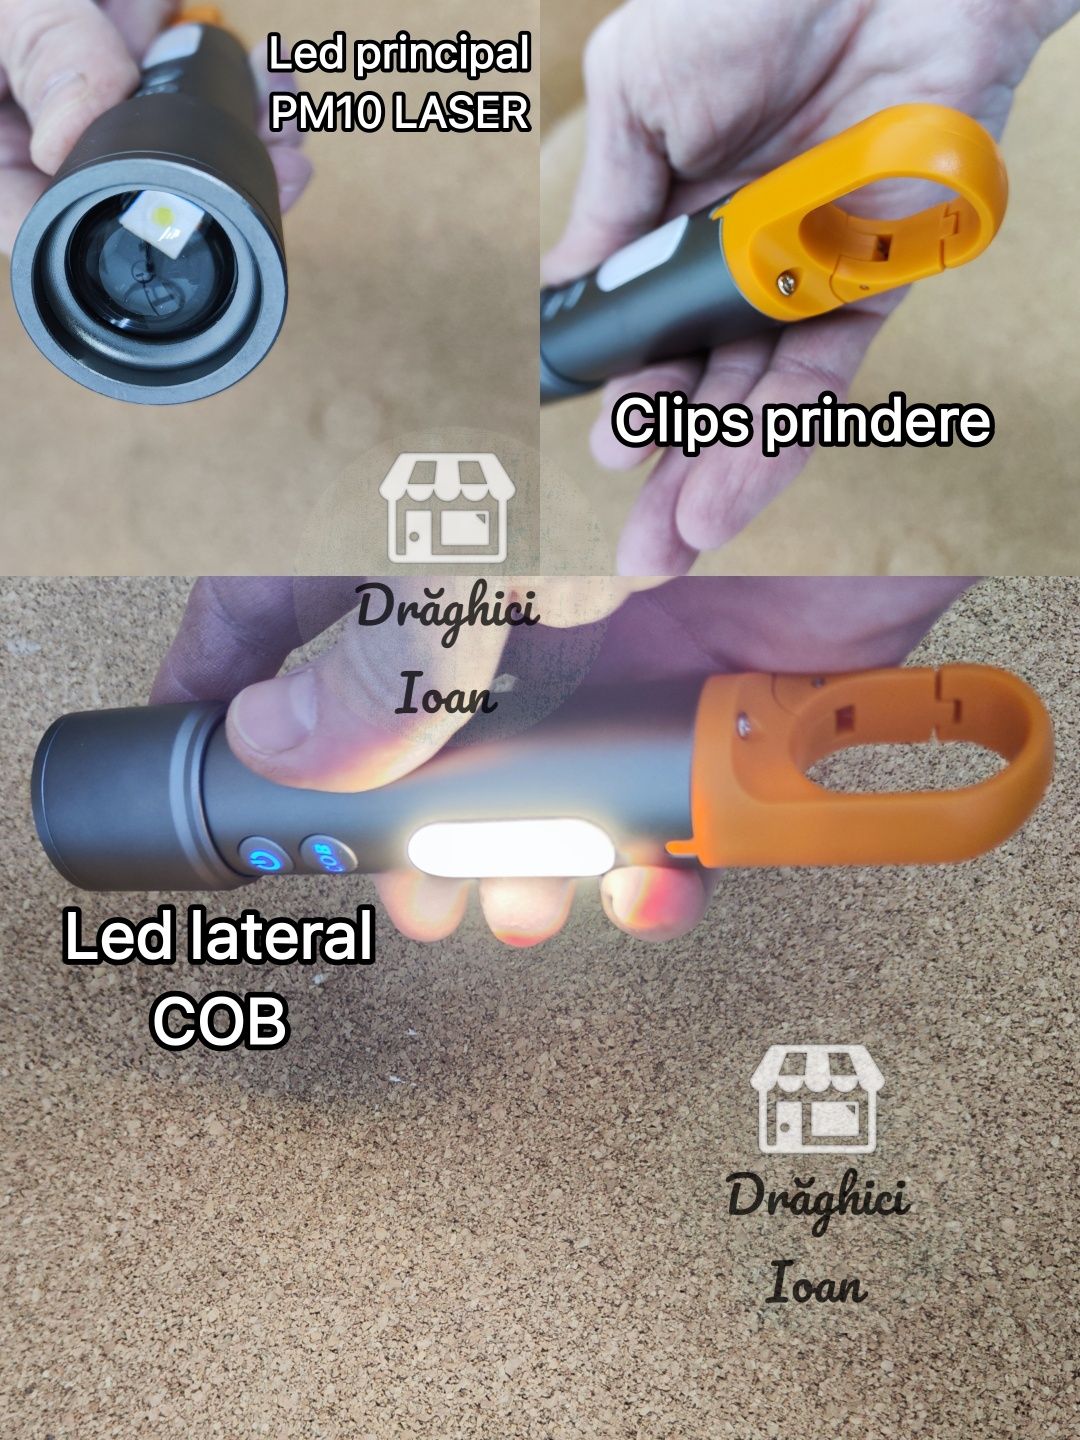 Lanterna PROFESIONALA led PM10 LASER + led COB si functie BEC